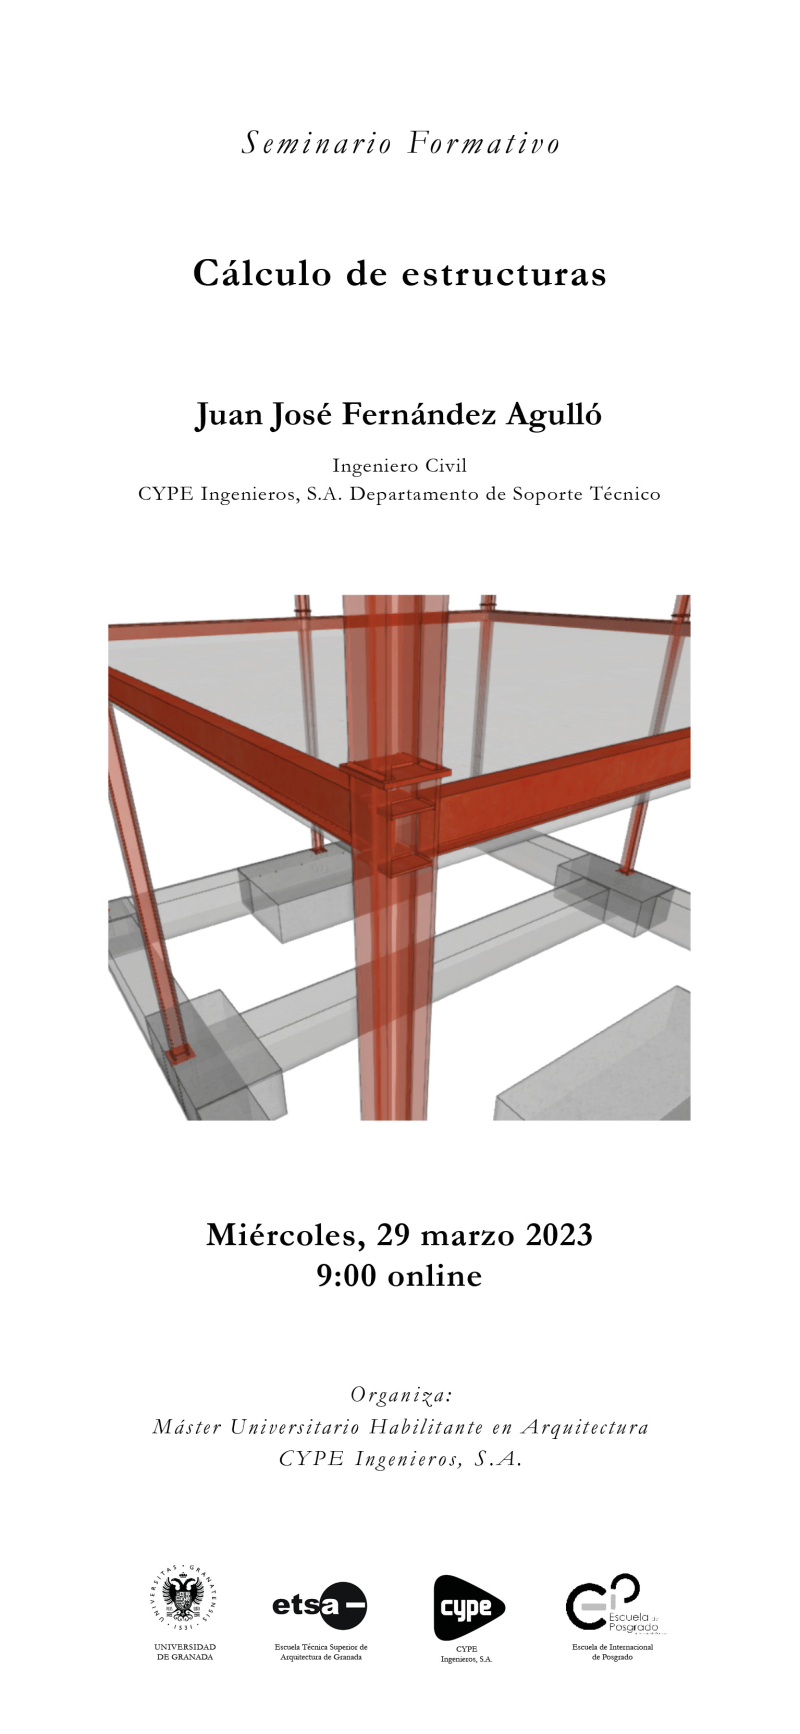 Cartel del seminario 1 de CYPE de Juan José Fernández